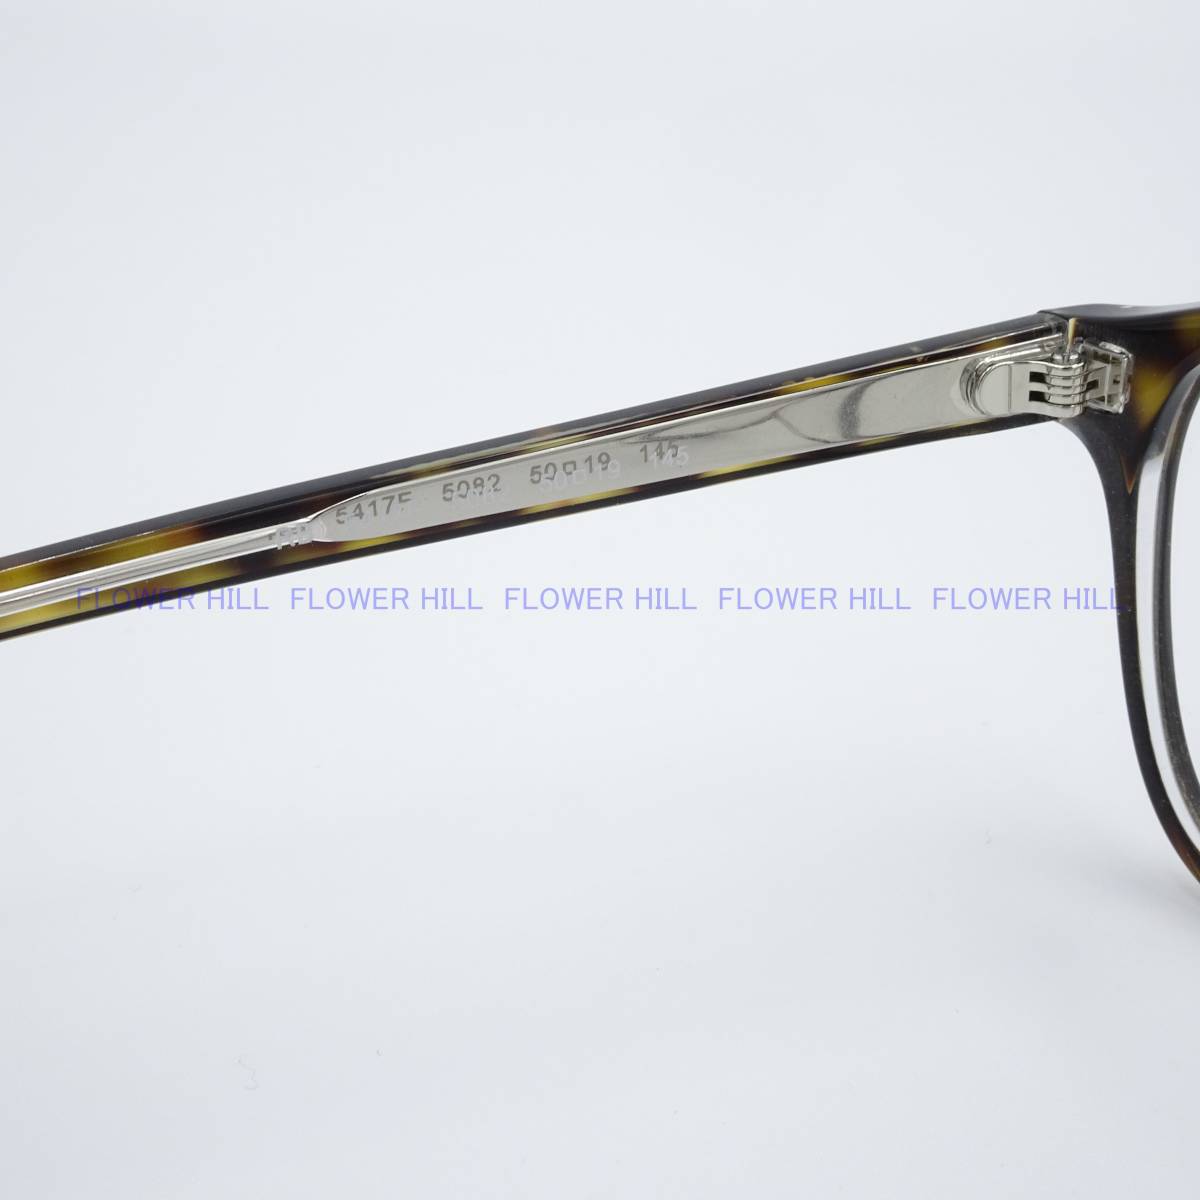 【新品・送料無料】レイバン Ray-Ban メガネ フレーム ハバナ RX5417F 5082 アジアンフィット メンズ レディース めがね 眼鏡